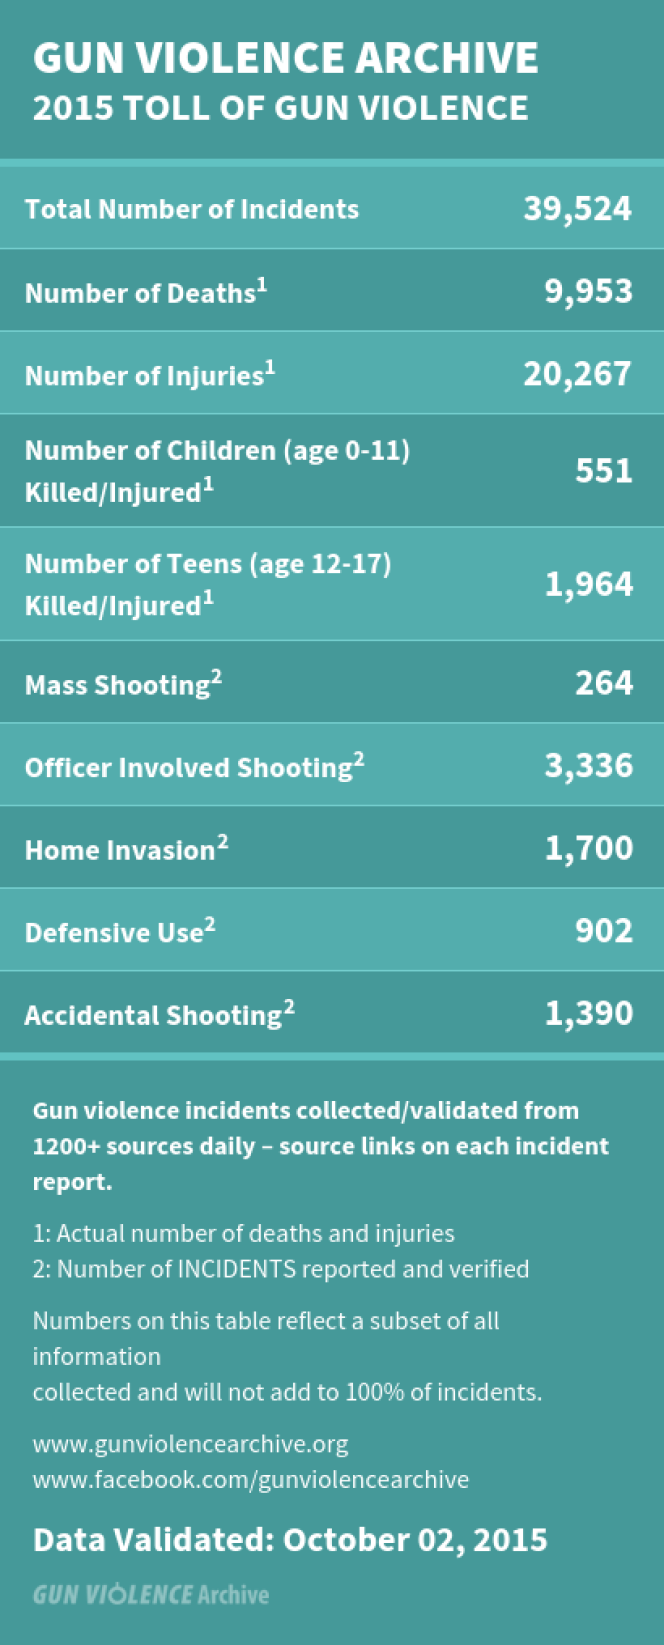 Bilan provisoire des fusillades aux Etats-Unis depuis le 1er janvier 2015.